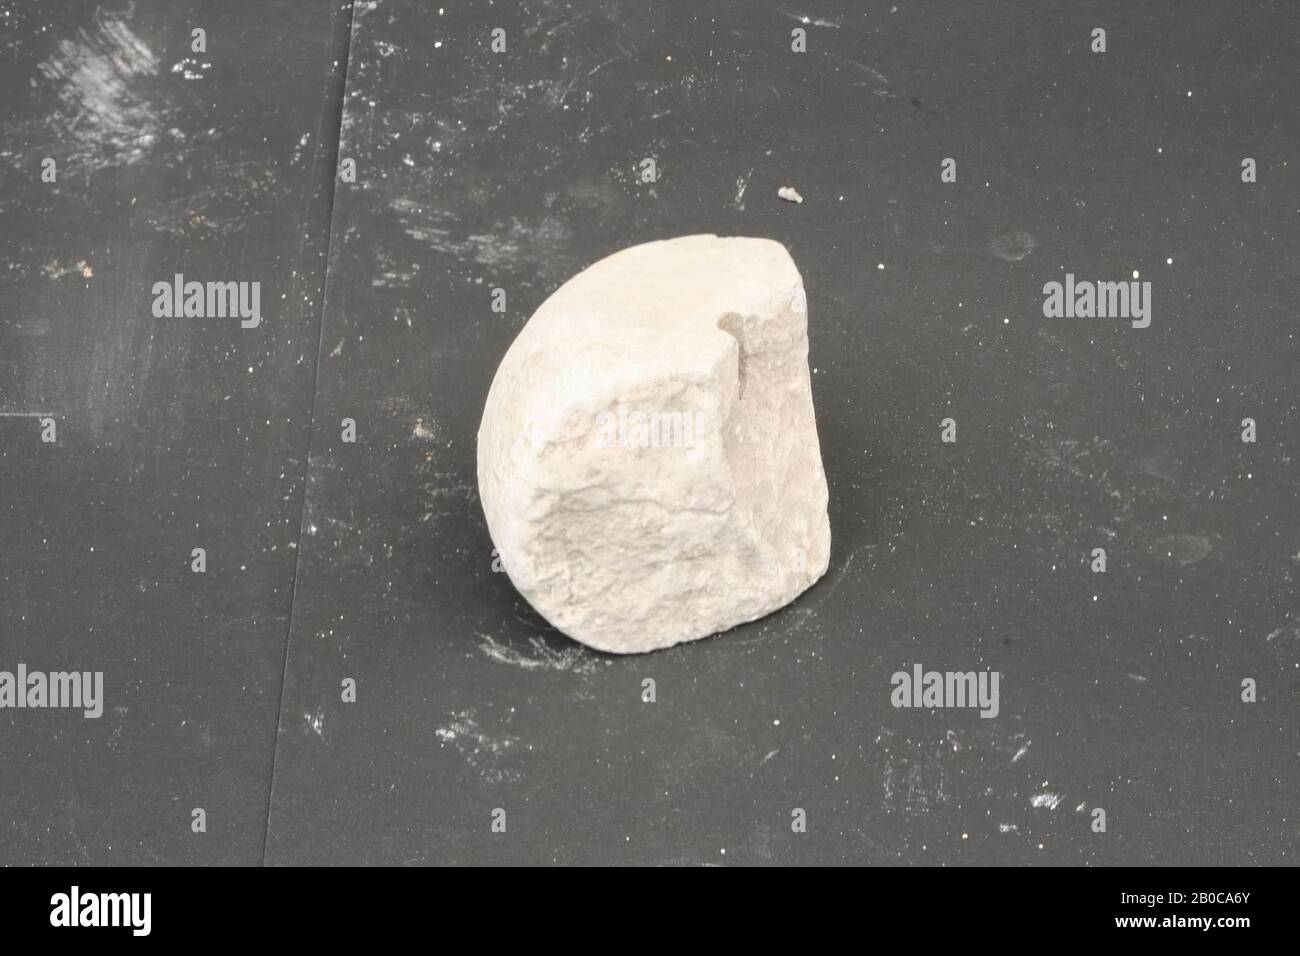 Poids de la pierre, poids, pierre, 7,2 x 6 x 5,4 cm, roman, Pays-Bas, inconnu, inconnu, inconnu Banque D'Images